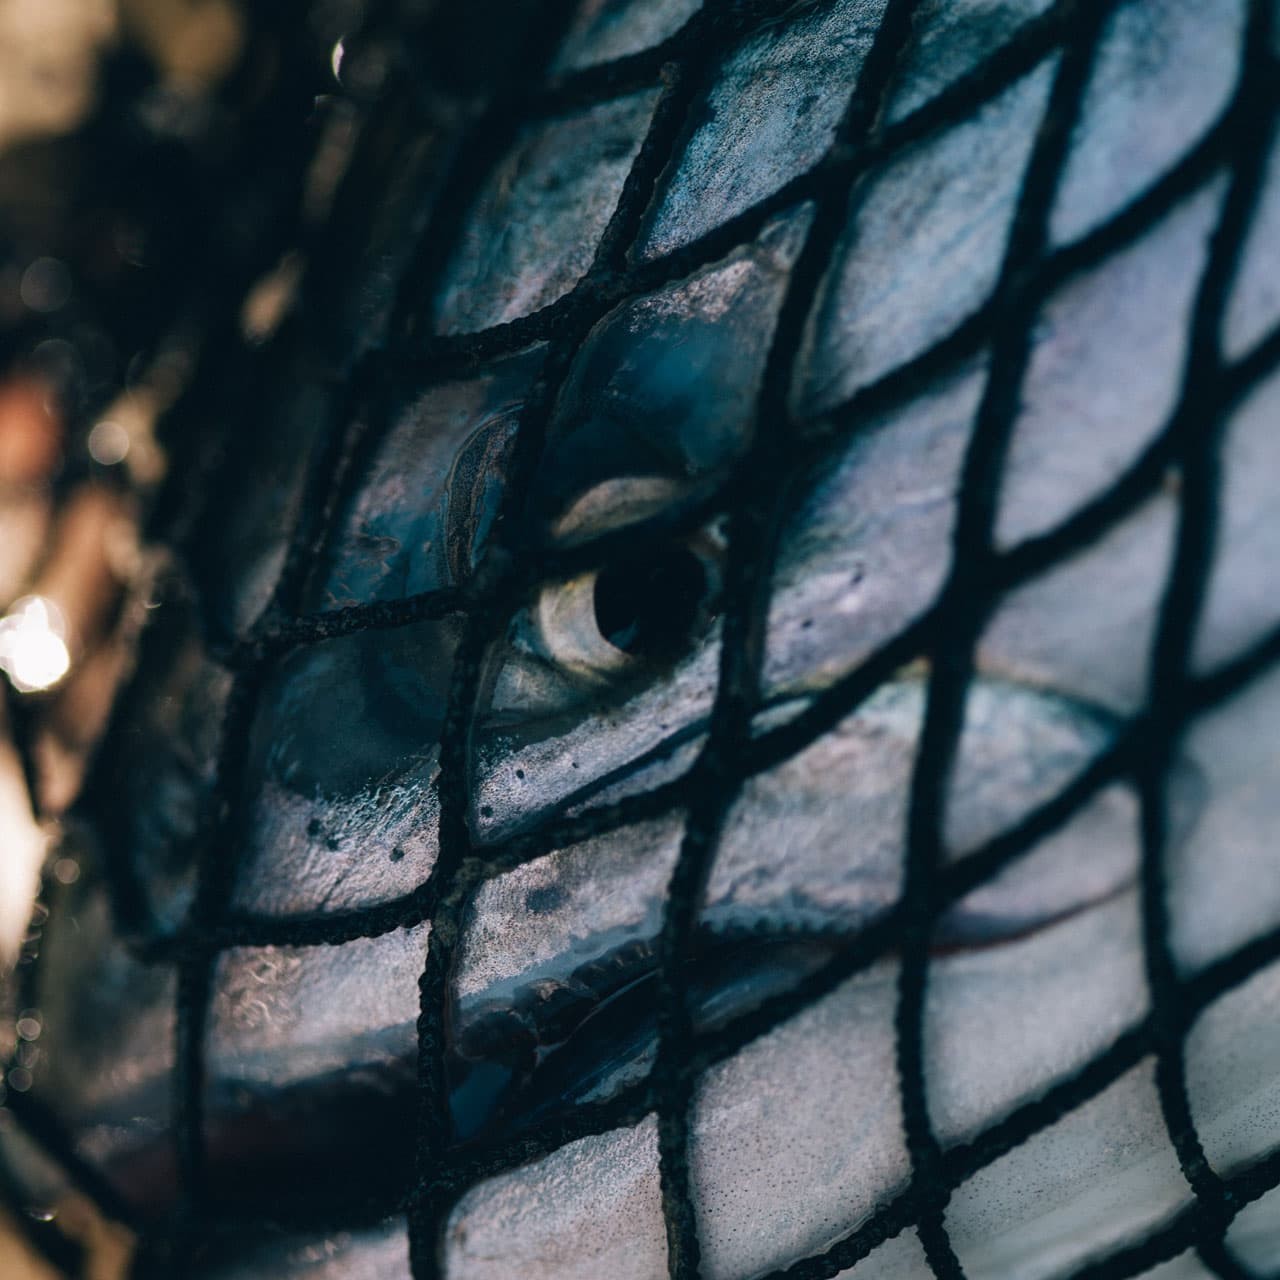 A salmon in a net.